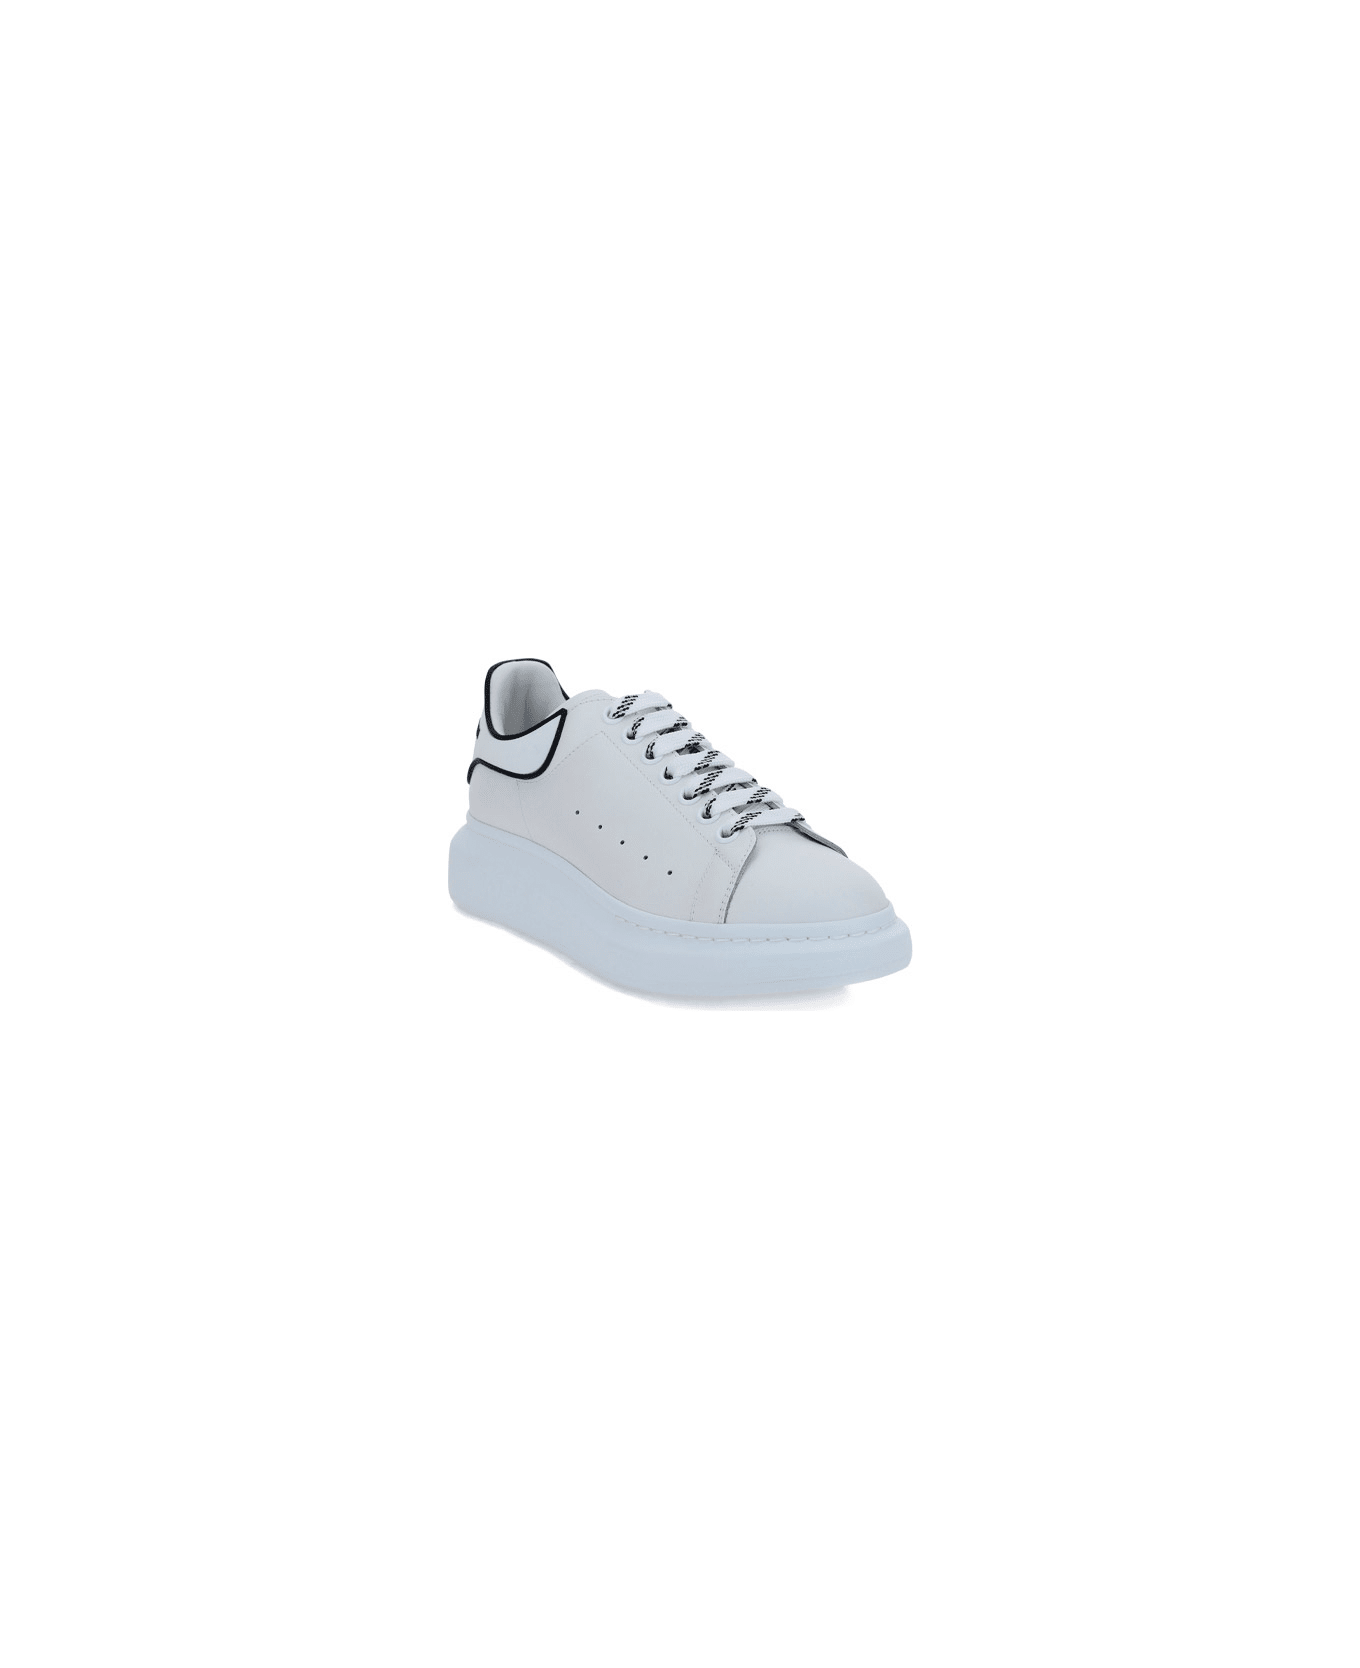 Alexander McQueen Sneakers - White/white/black スニーカー